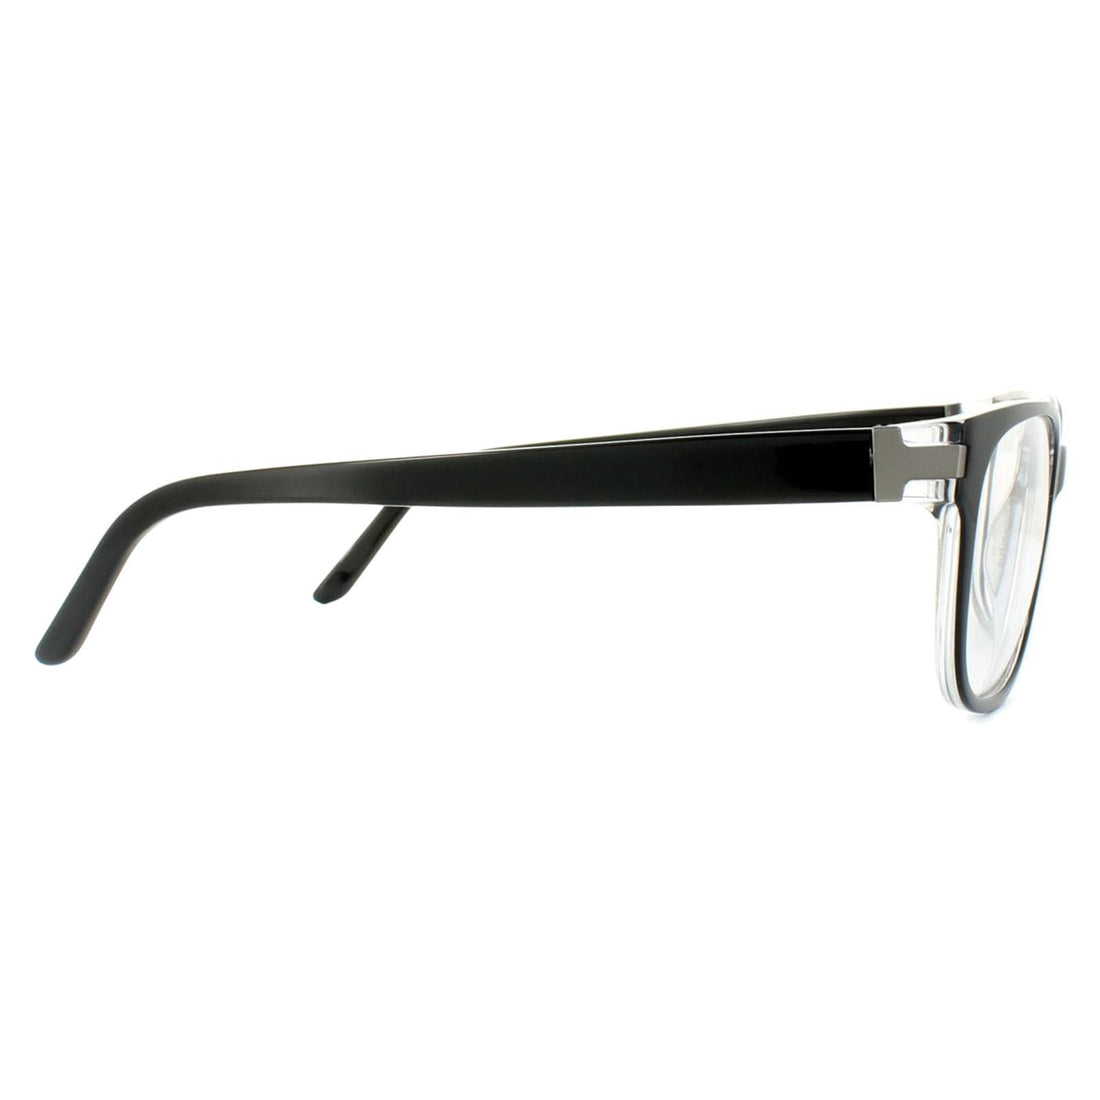 Porsche Design P8250 Glasses Frames